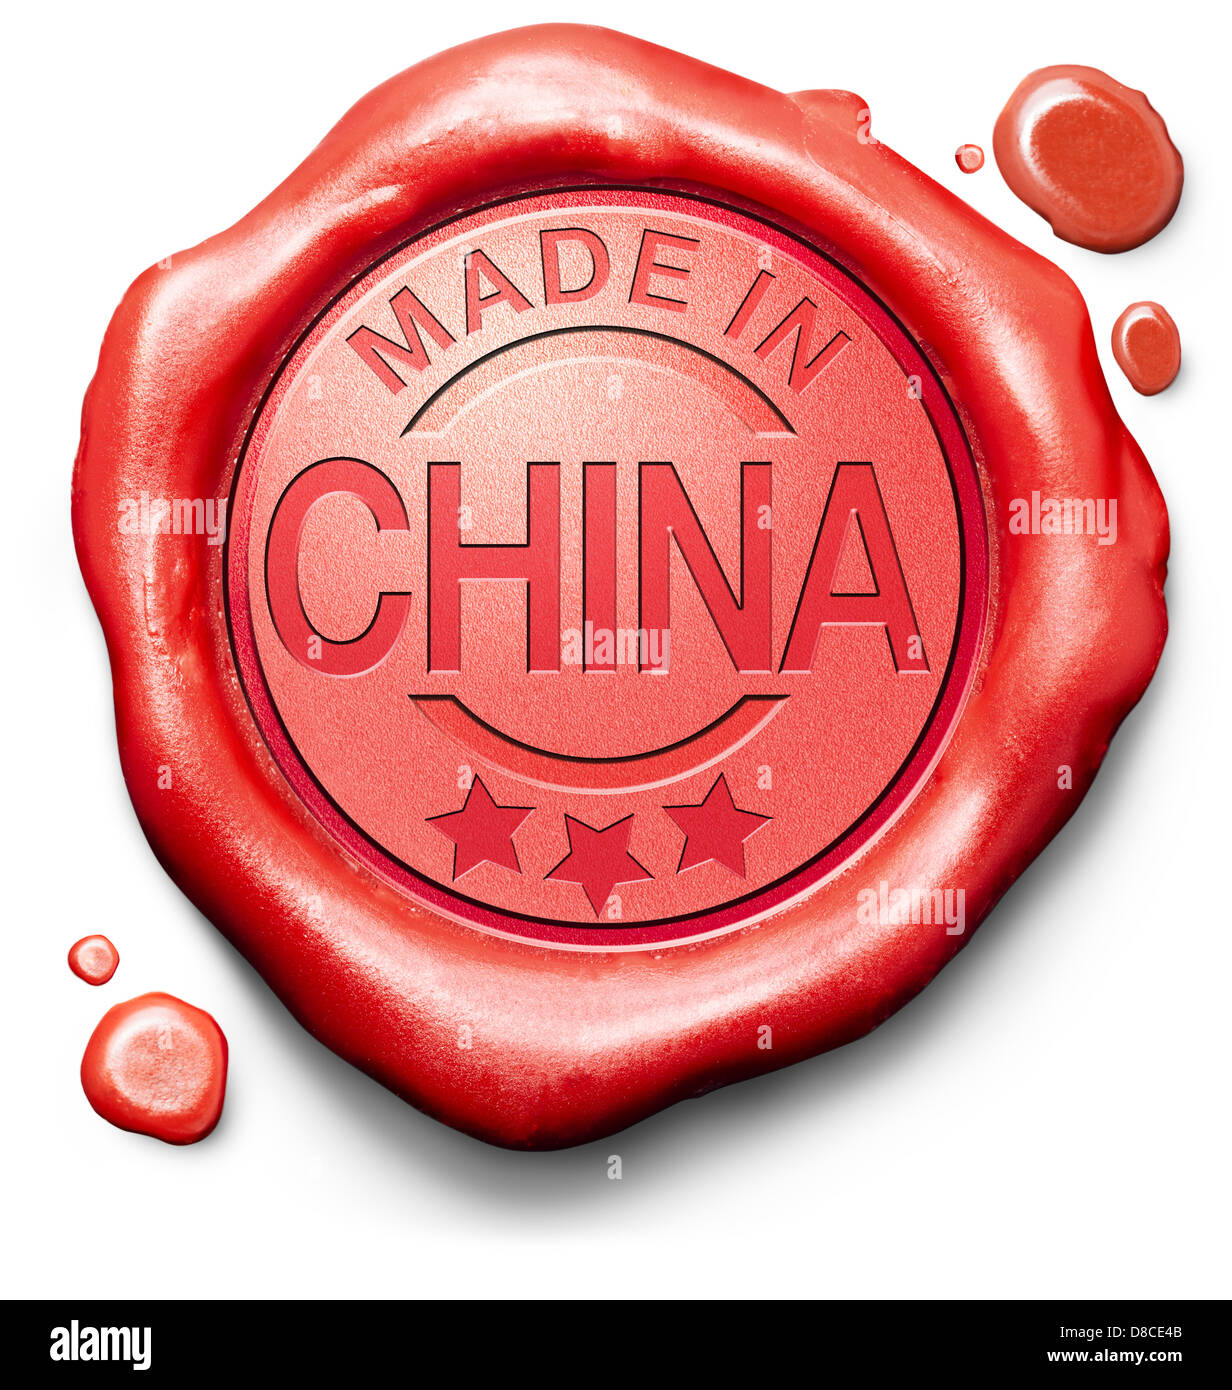 Fabbricato in Cina prodotto originale comprare locale comprare Cinese autentica etichetta di qualità di cera rossa guarnizione timbro Foto Stock